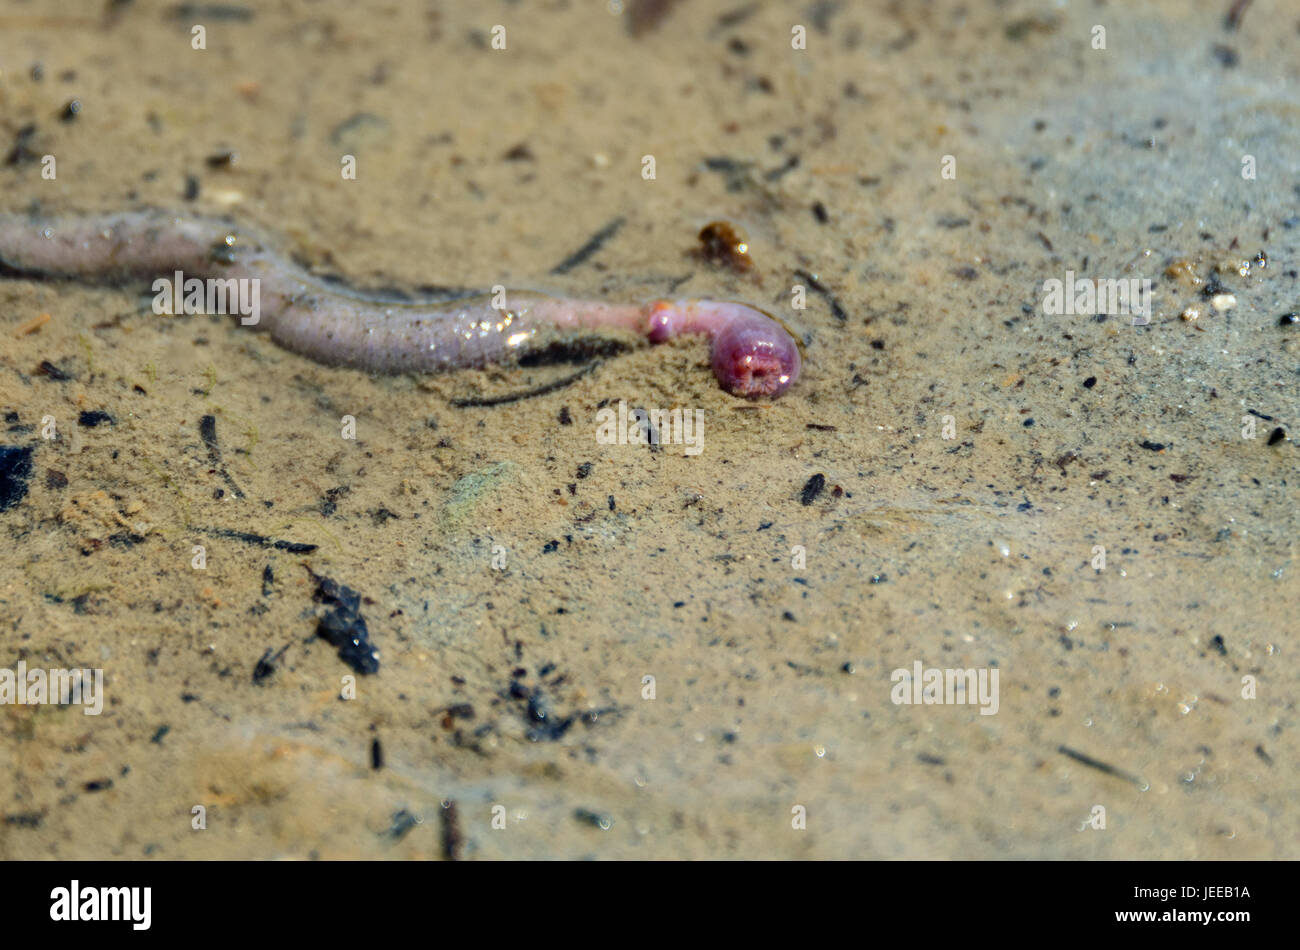 Bloodworm (pb. Glycera dibranchiata), Frazer Point, l'Acadia National Park, Maine Banque D'Images